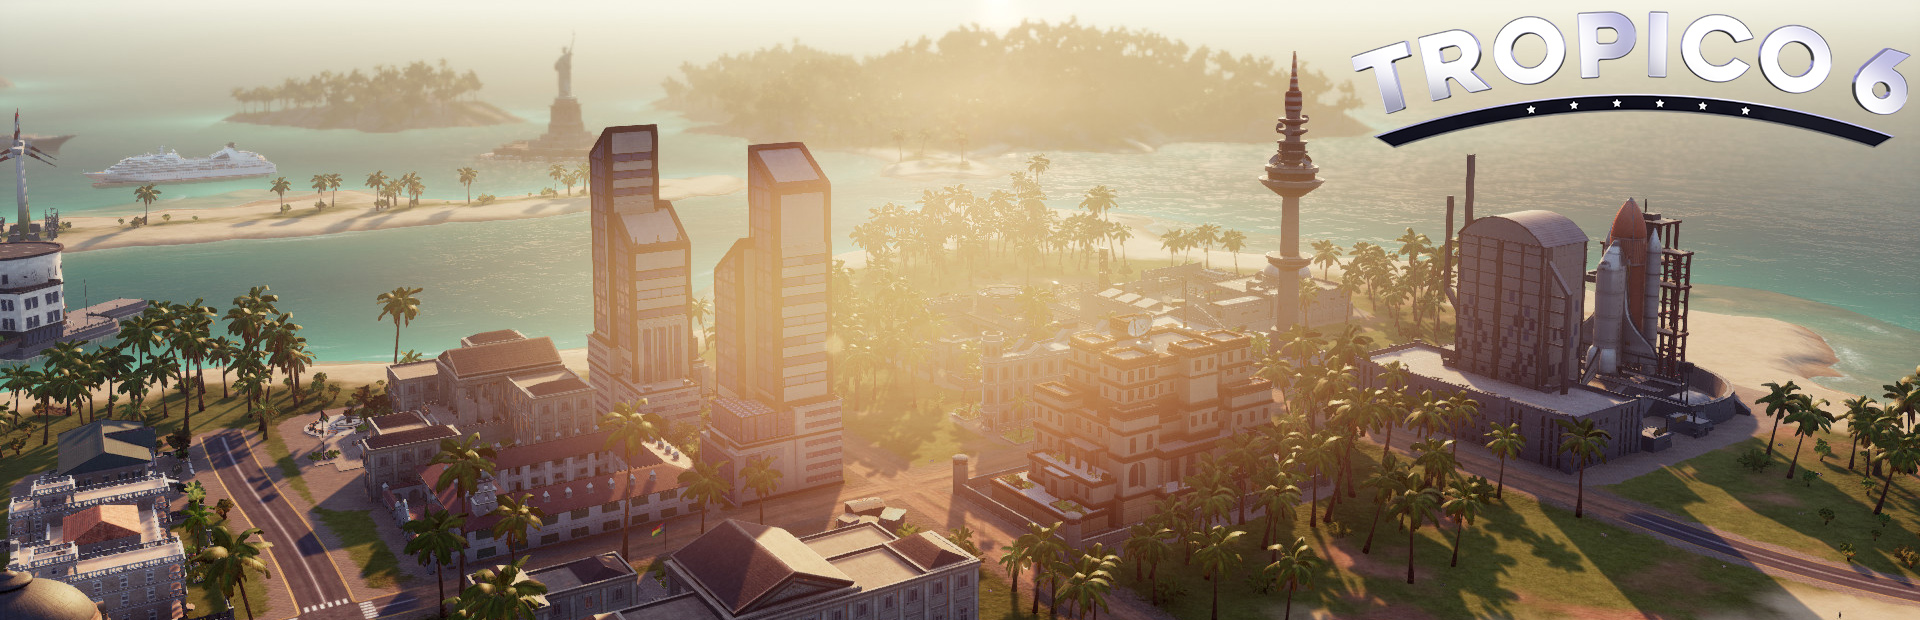 دانلود بازی Tropico 6 برای کامپیوتر | گیمباتو